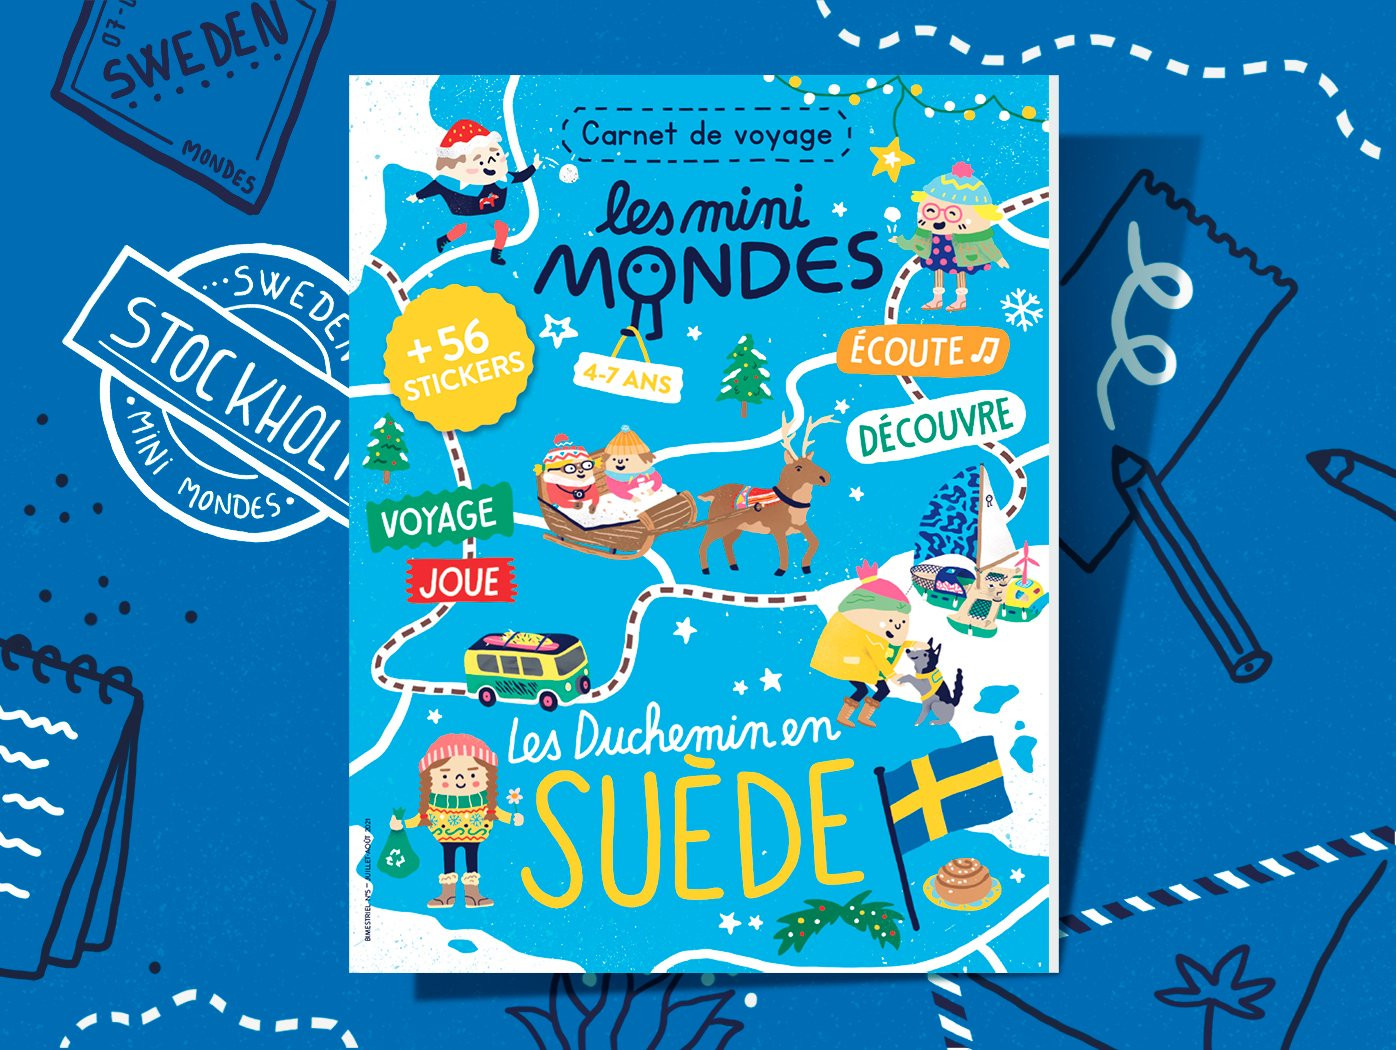 Le carnet de voyage 4+  Suisse - Les Mini Mondes - little cecile